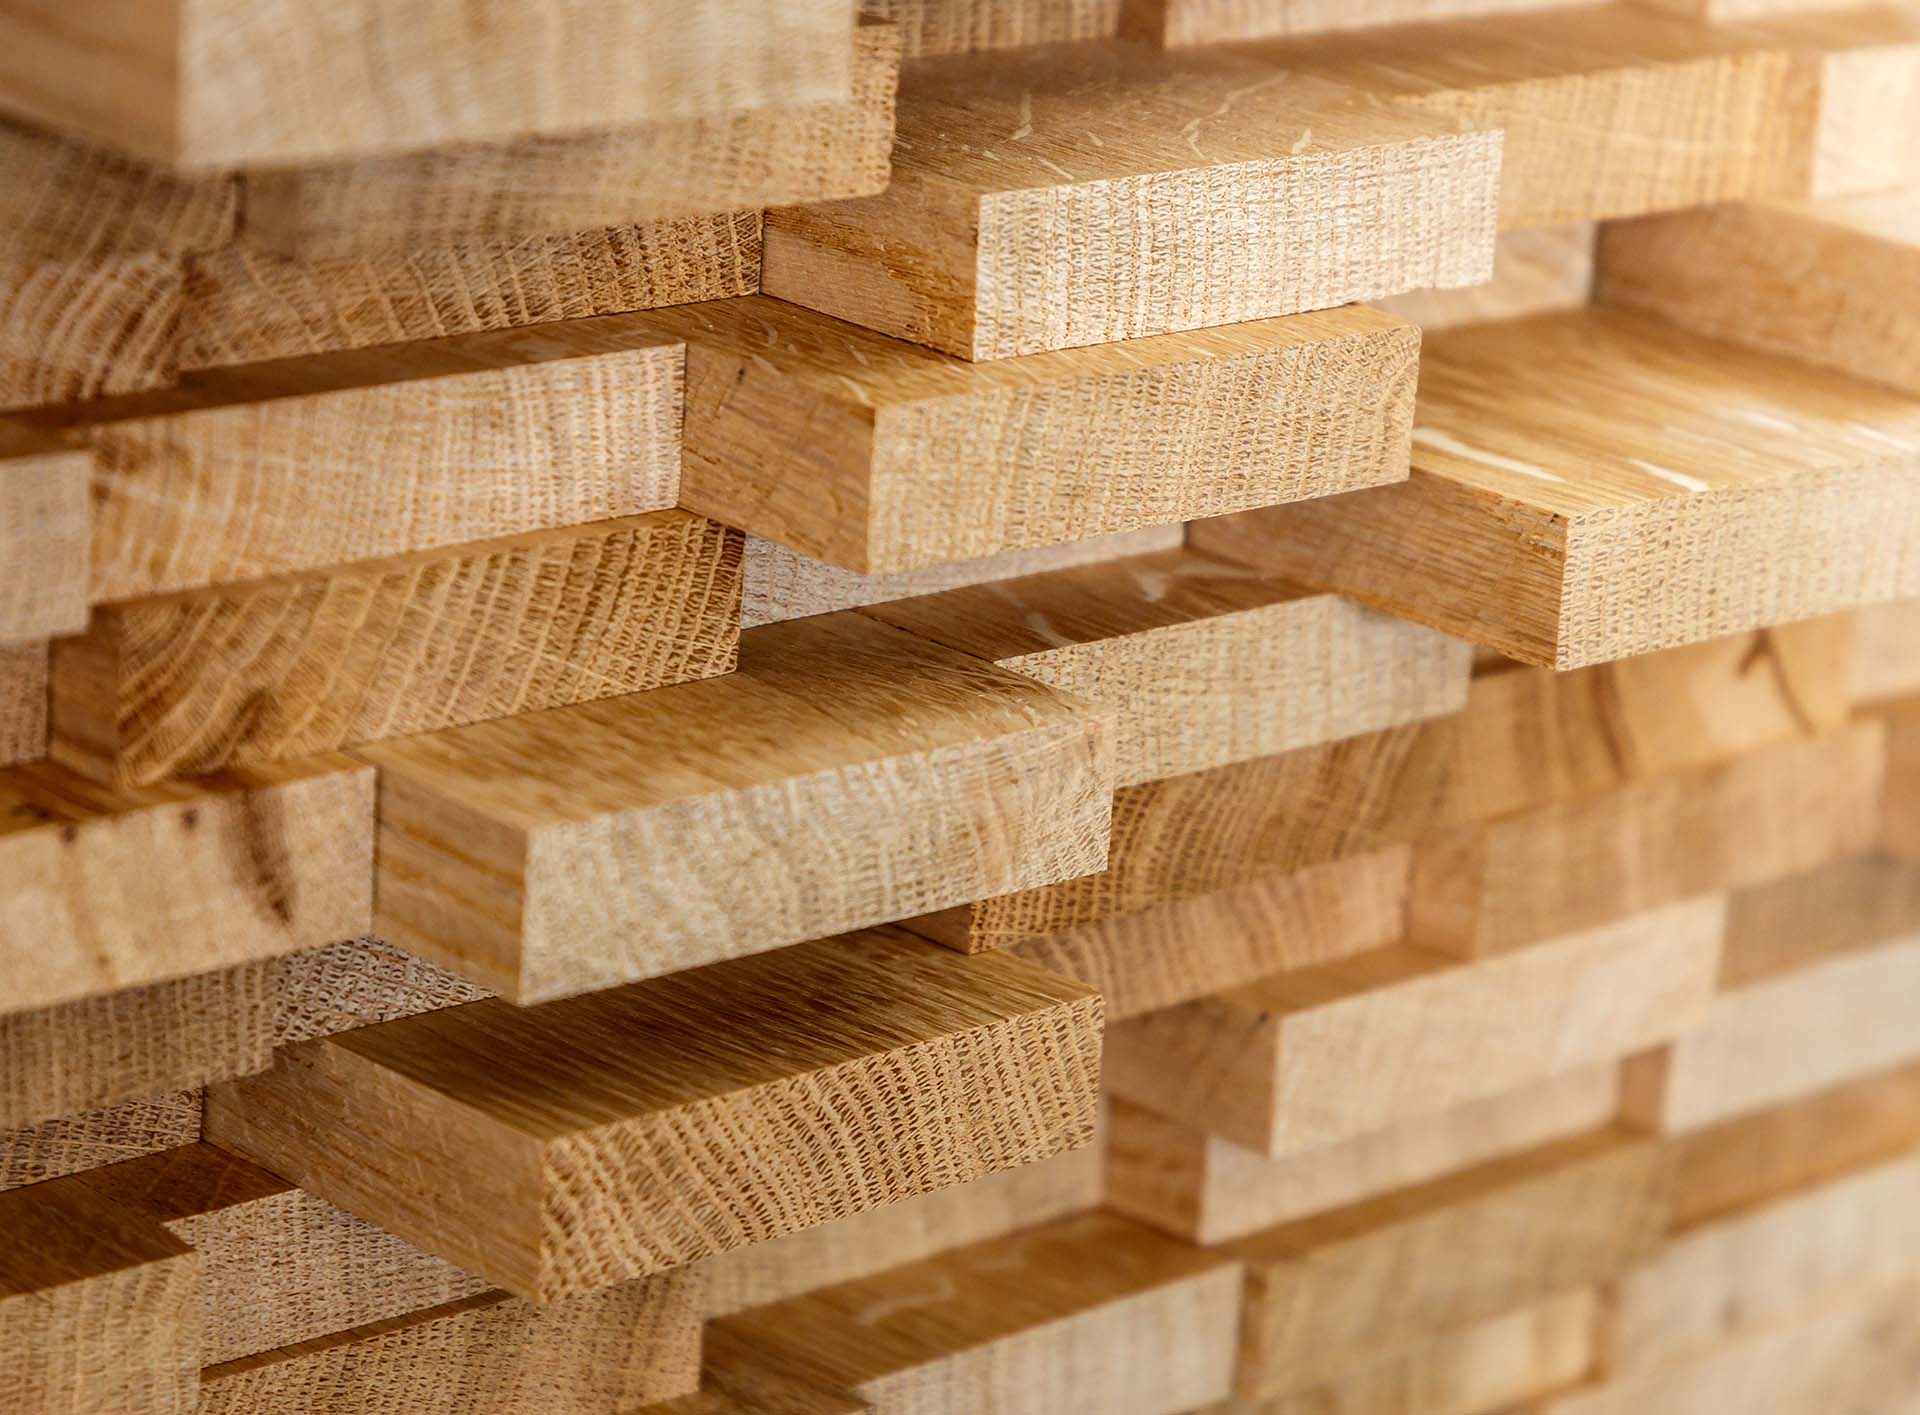 Stapel von geschnittenem, natürlichem Holz im Detail, zeigt Textur und Maserung für Qualitätsbaustoffe.